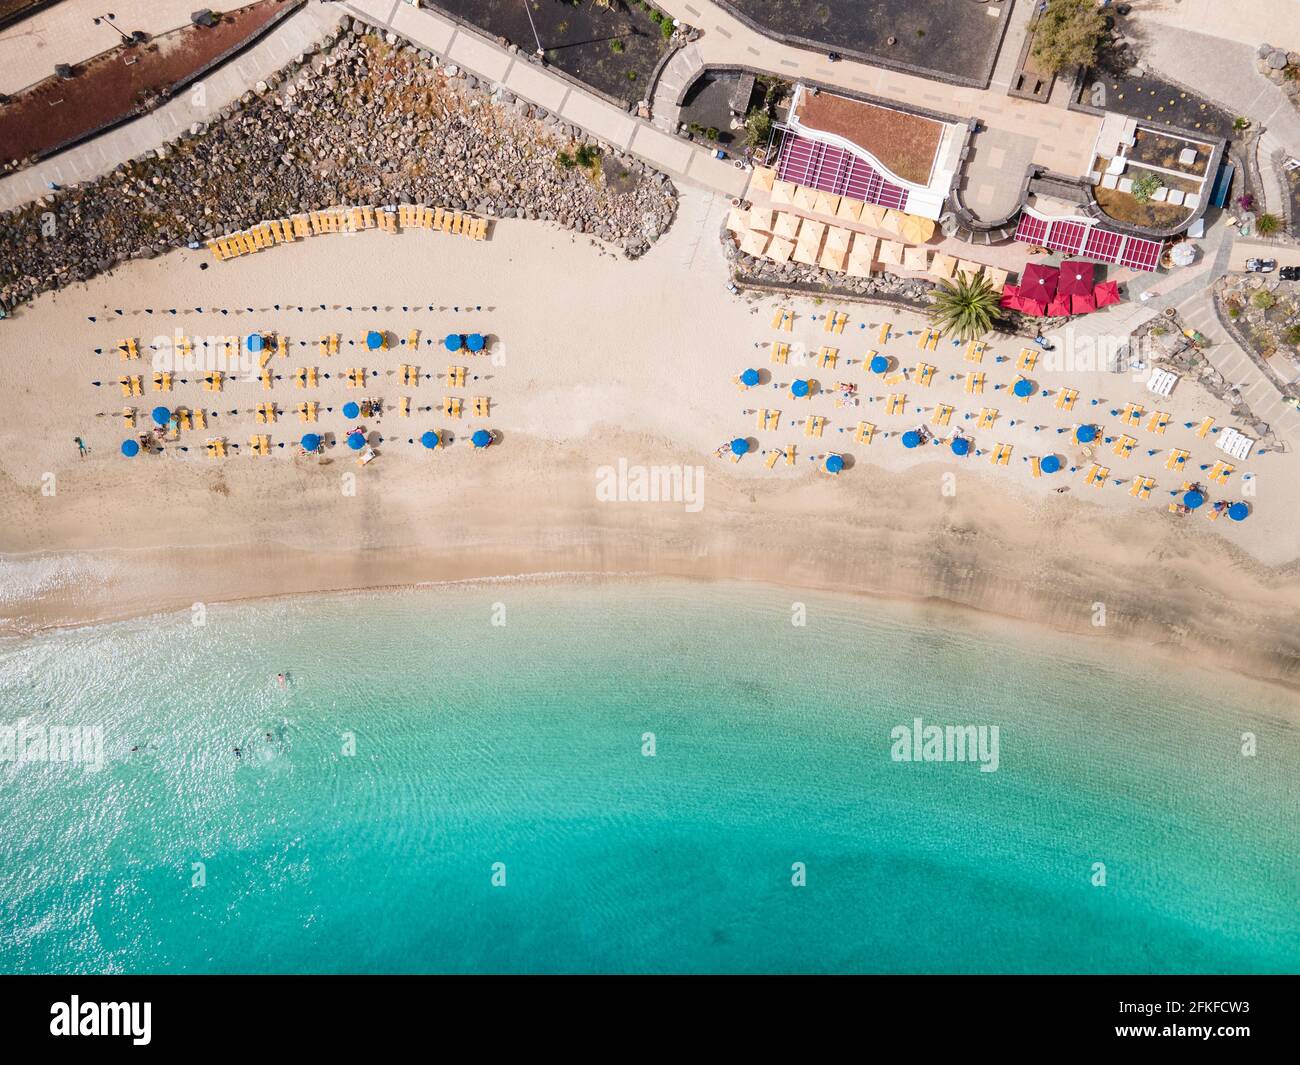 Plage de sable blanc avec des personnes, parasols et chaises longues vue aérienne du dessus Banque D'Images